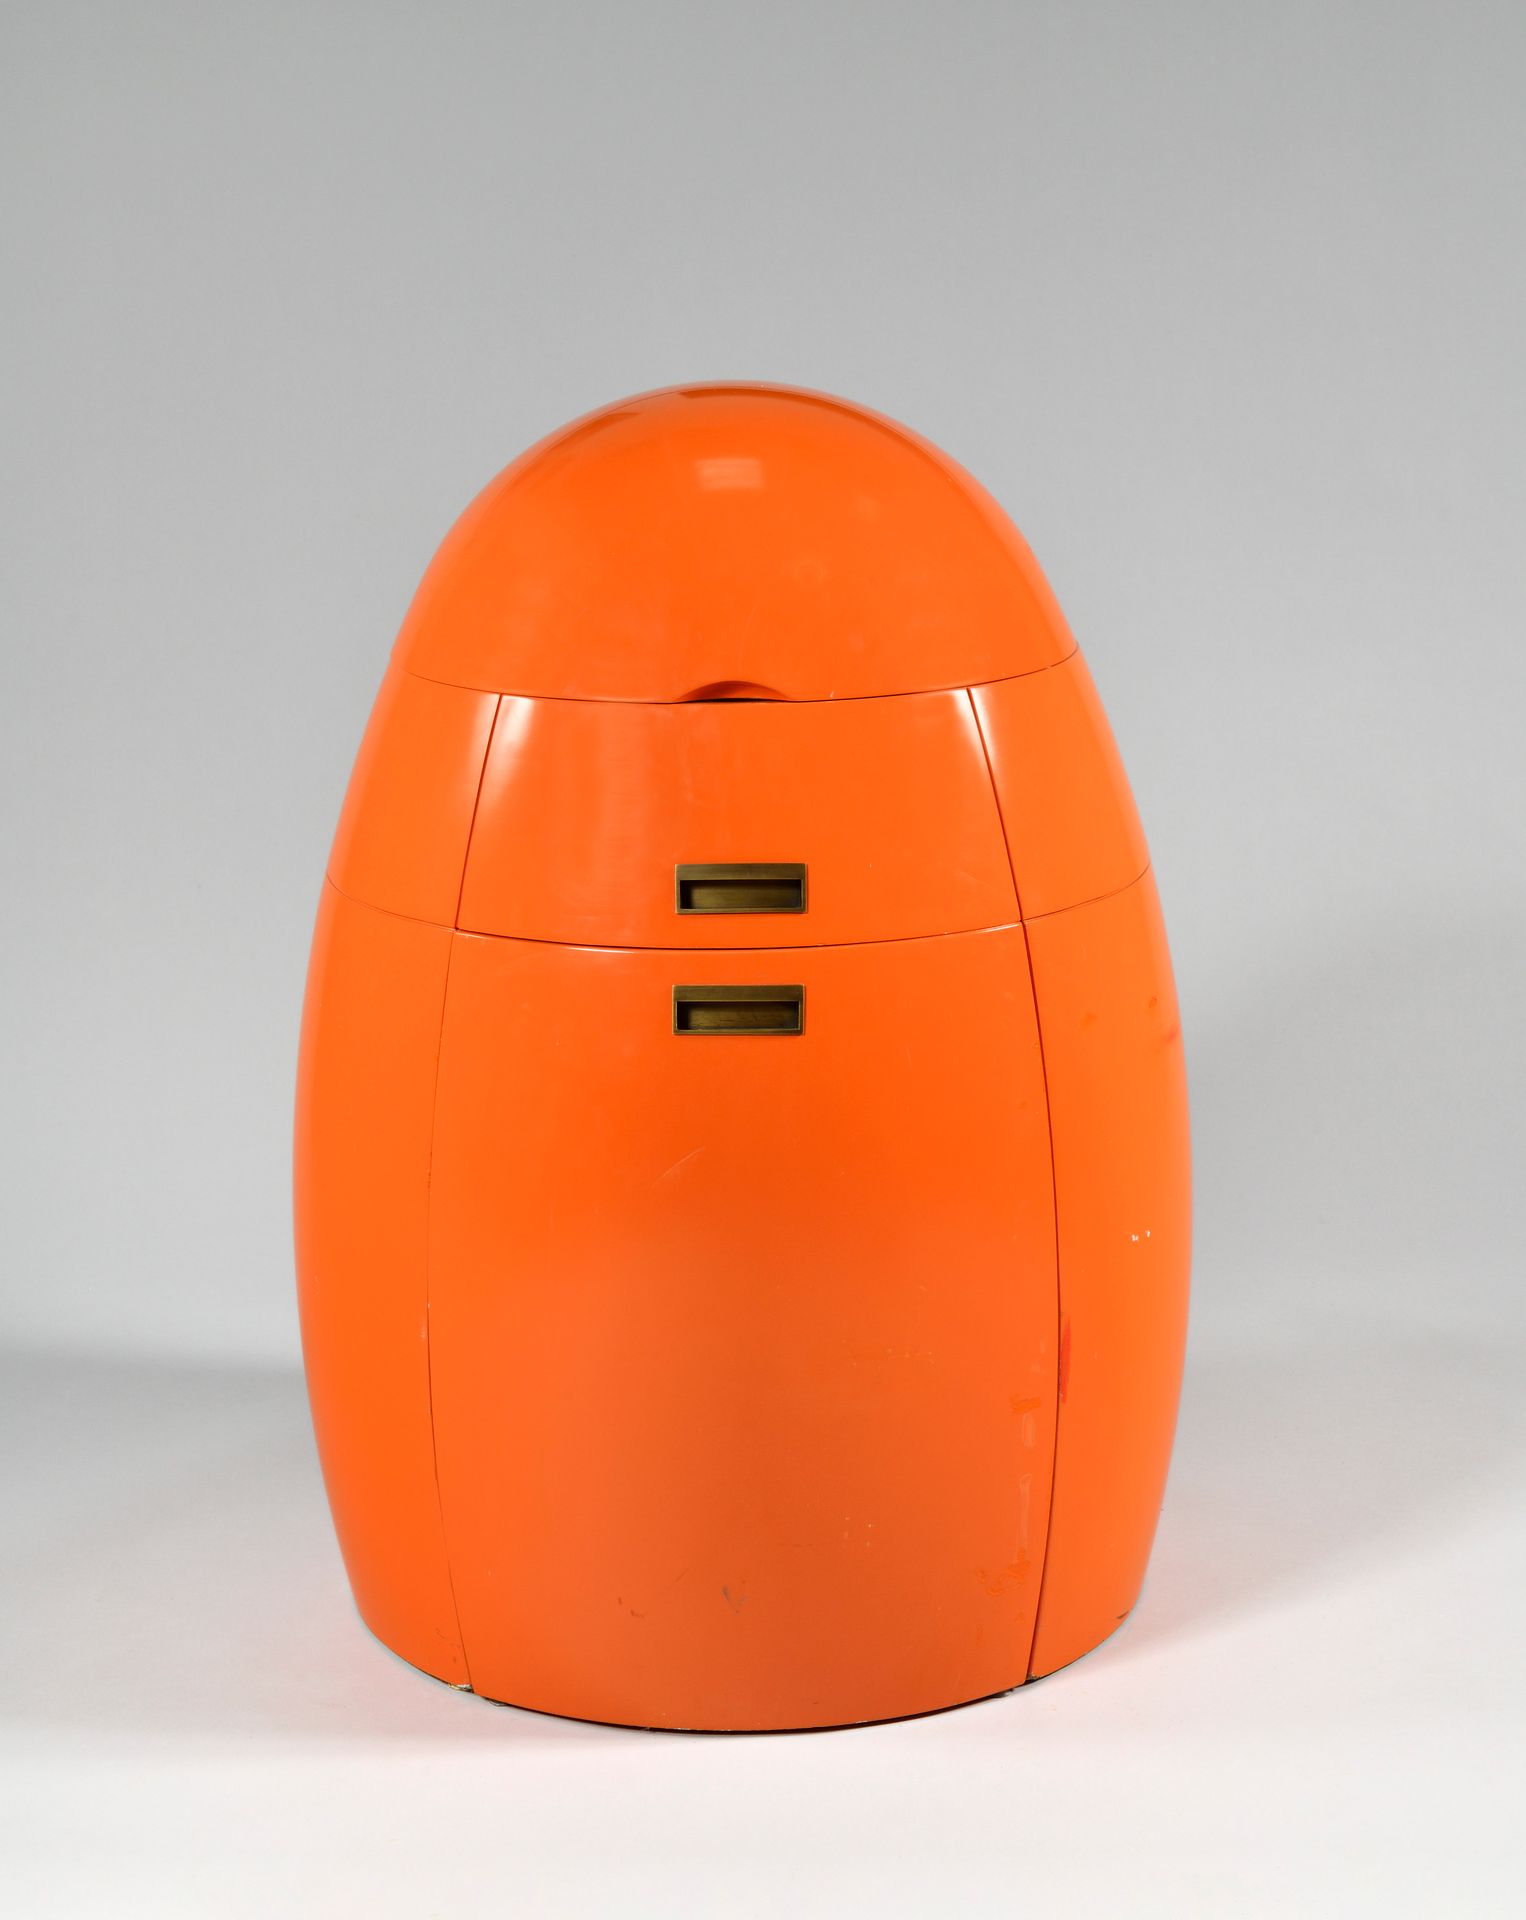 Null 
DECCA FURNITURES PARIS

Prototype

Ovoid dressing table in orange lacquere&hellip;